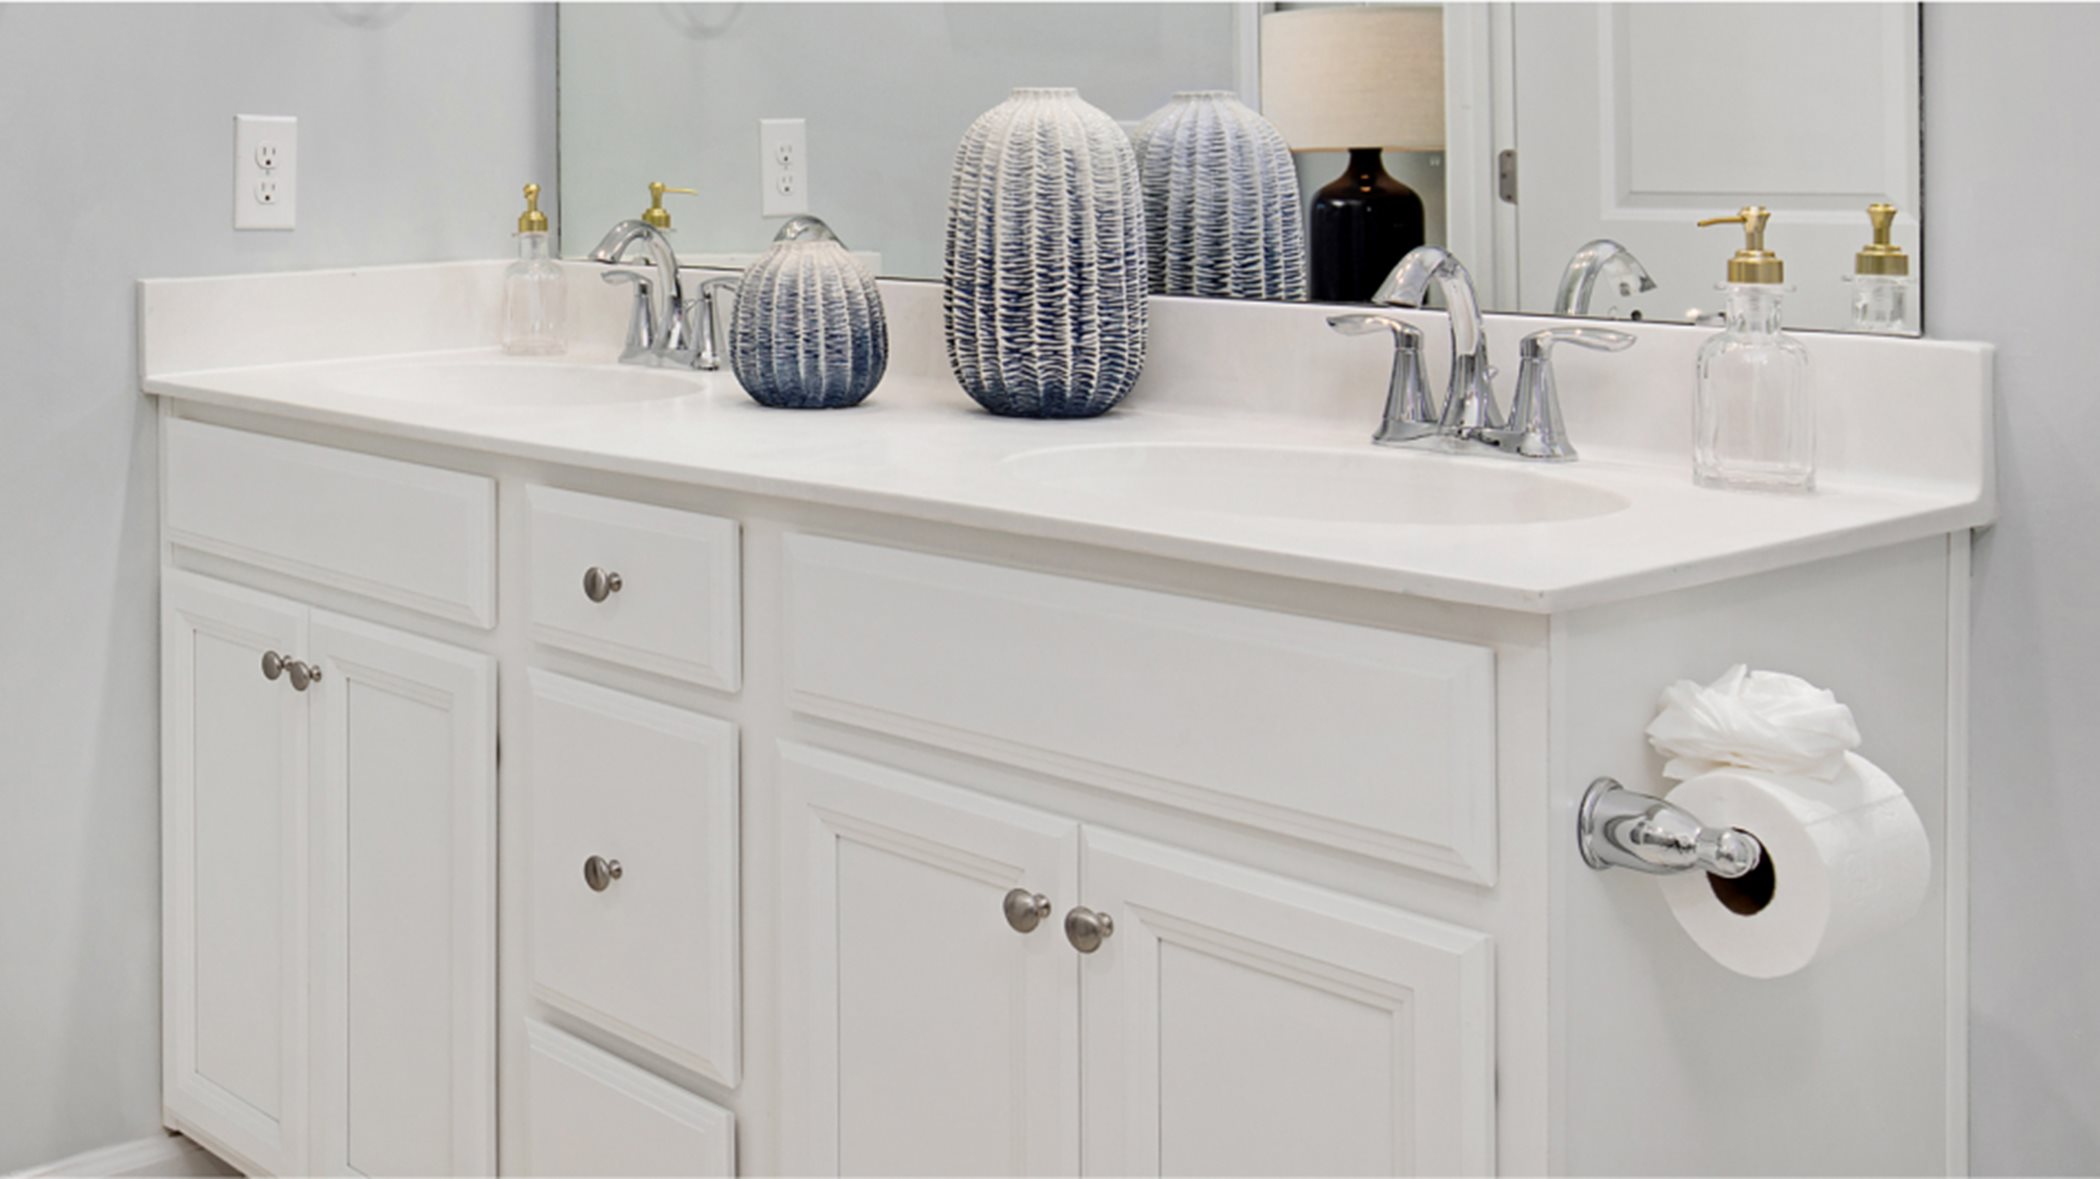 Elegant vanity with dual sinks